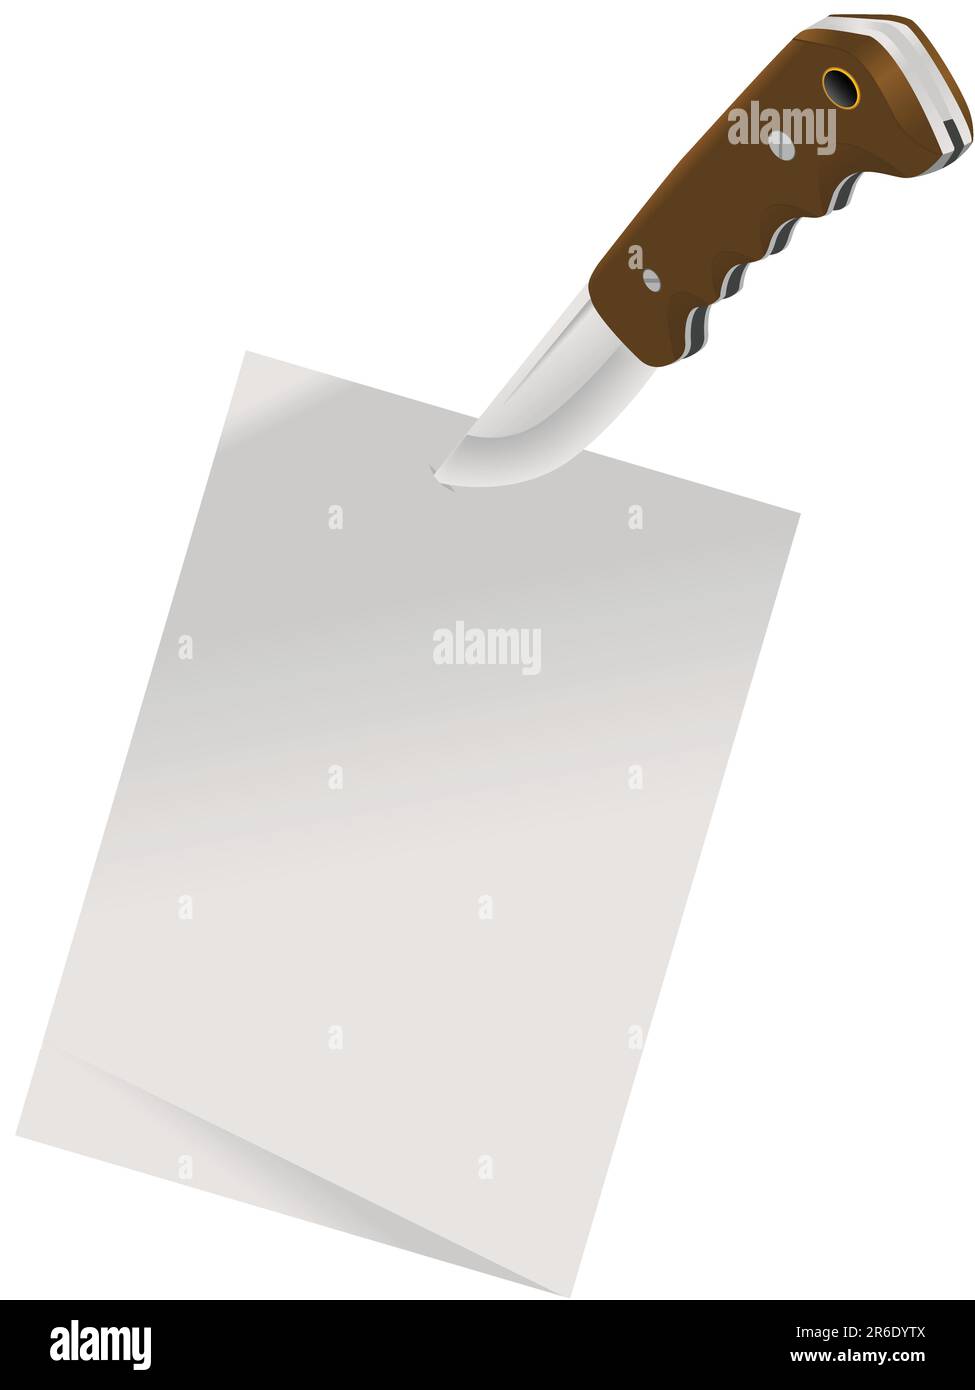 Blatt eines Papiers, das von einem Messer für einen Hintergrund in einem Vektor fixiert wurde Stock Vektor